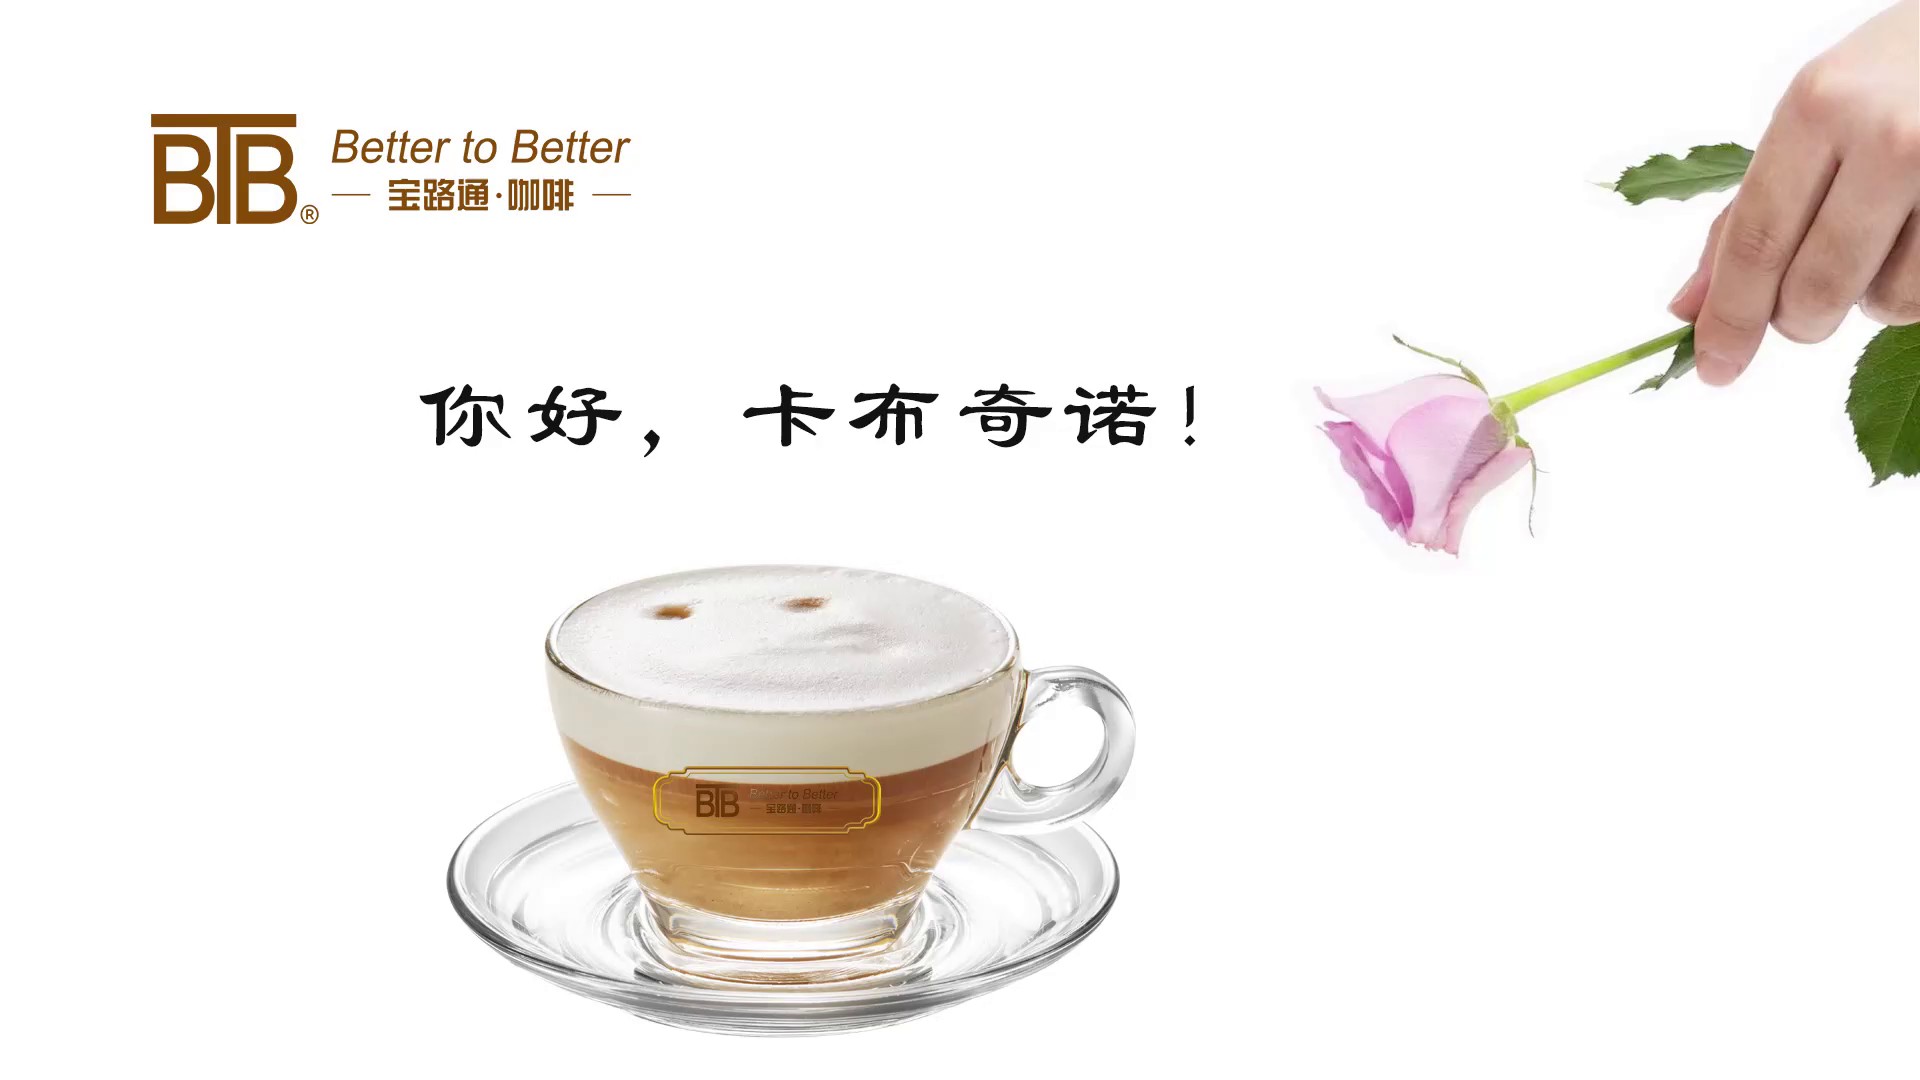 闵行区商务咖啡机品牌,咖啡机